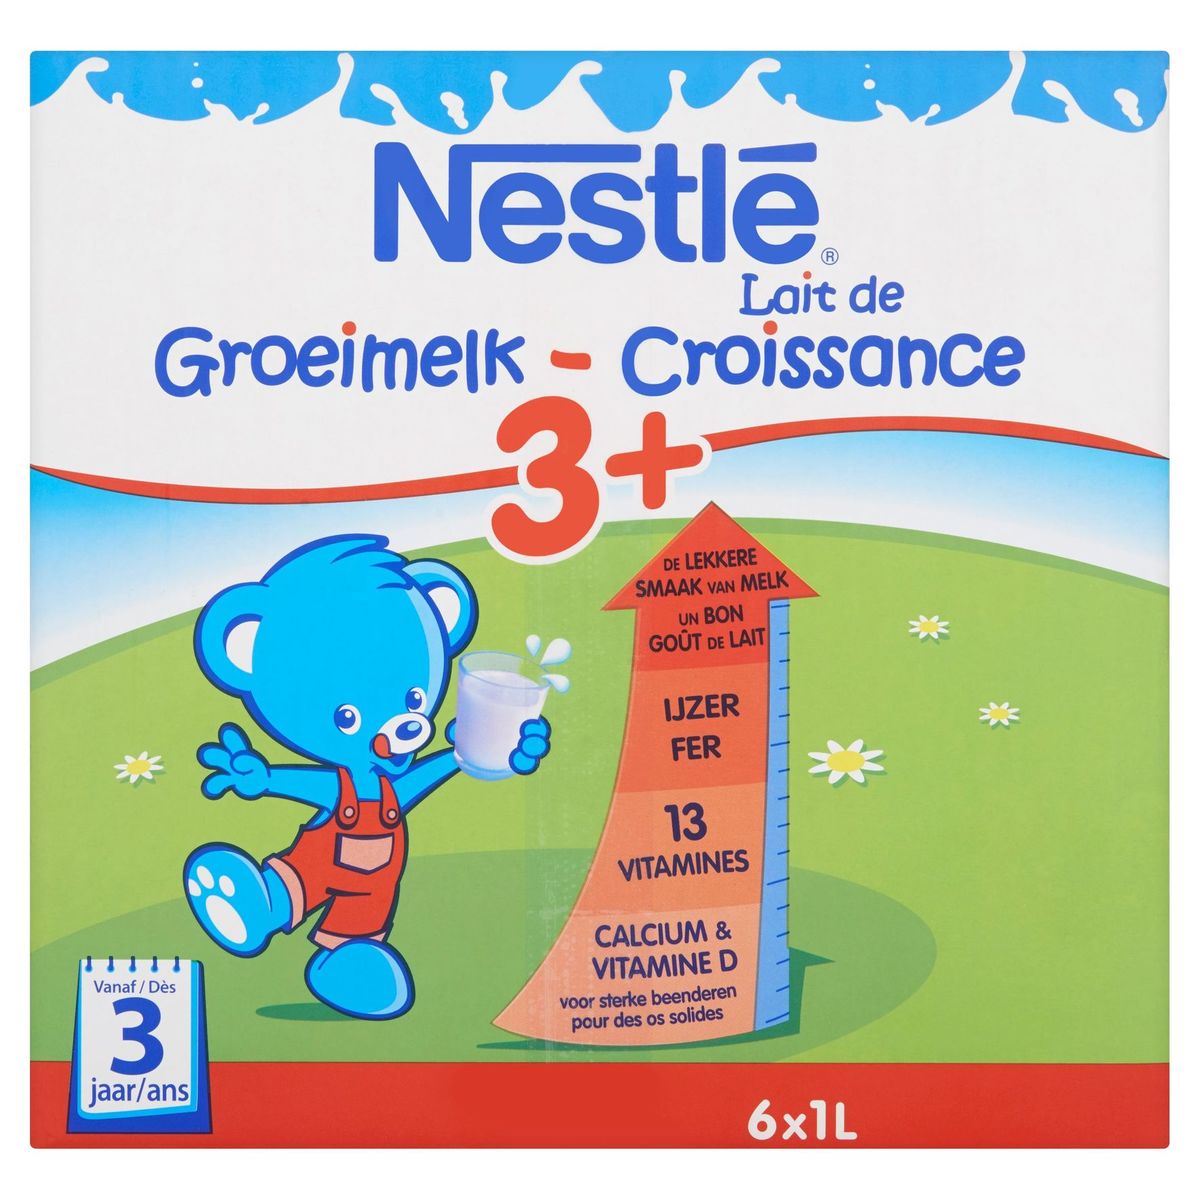 Nestlé Groeimelk 3+ vanaf 3 jaar 6x1L